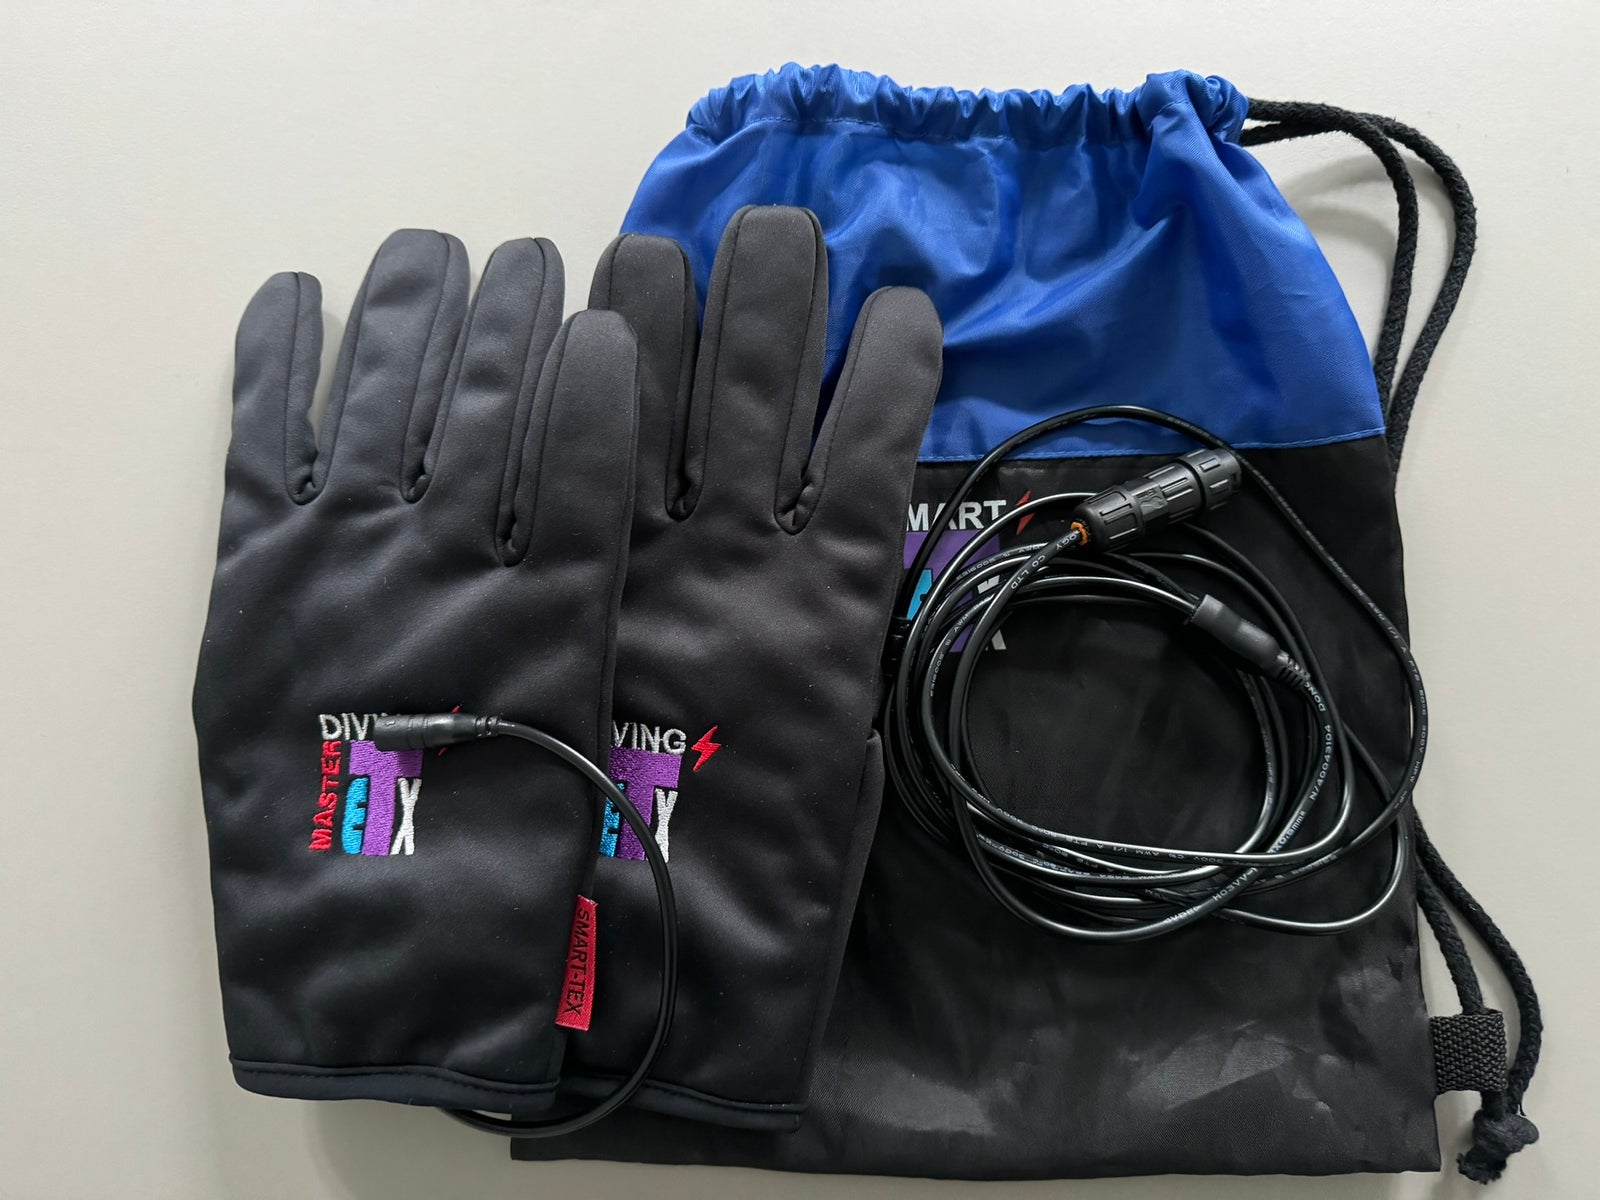 SmartTex handsker med elvarme str. L